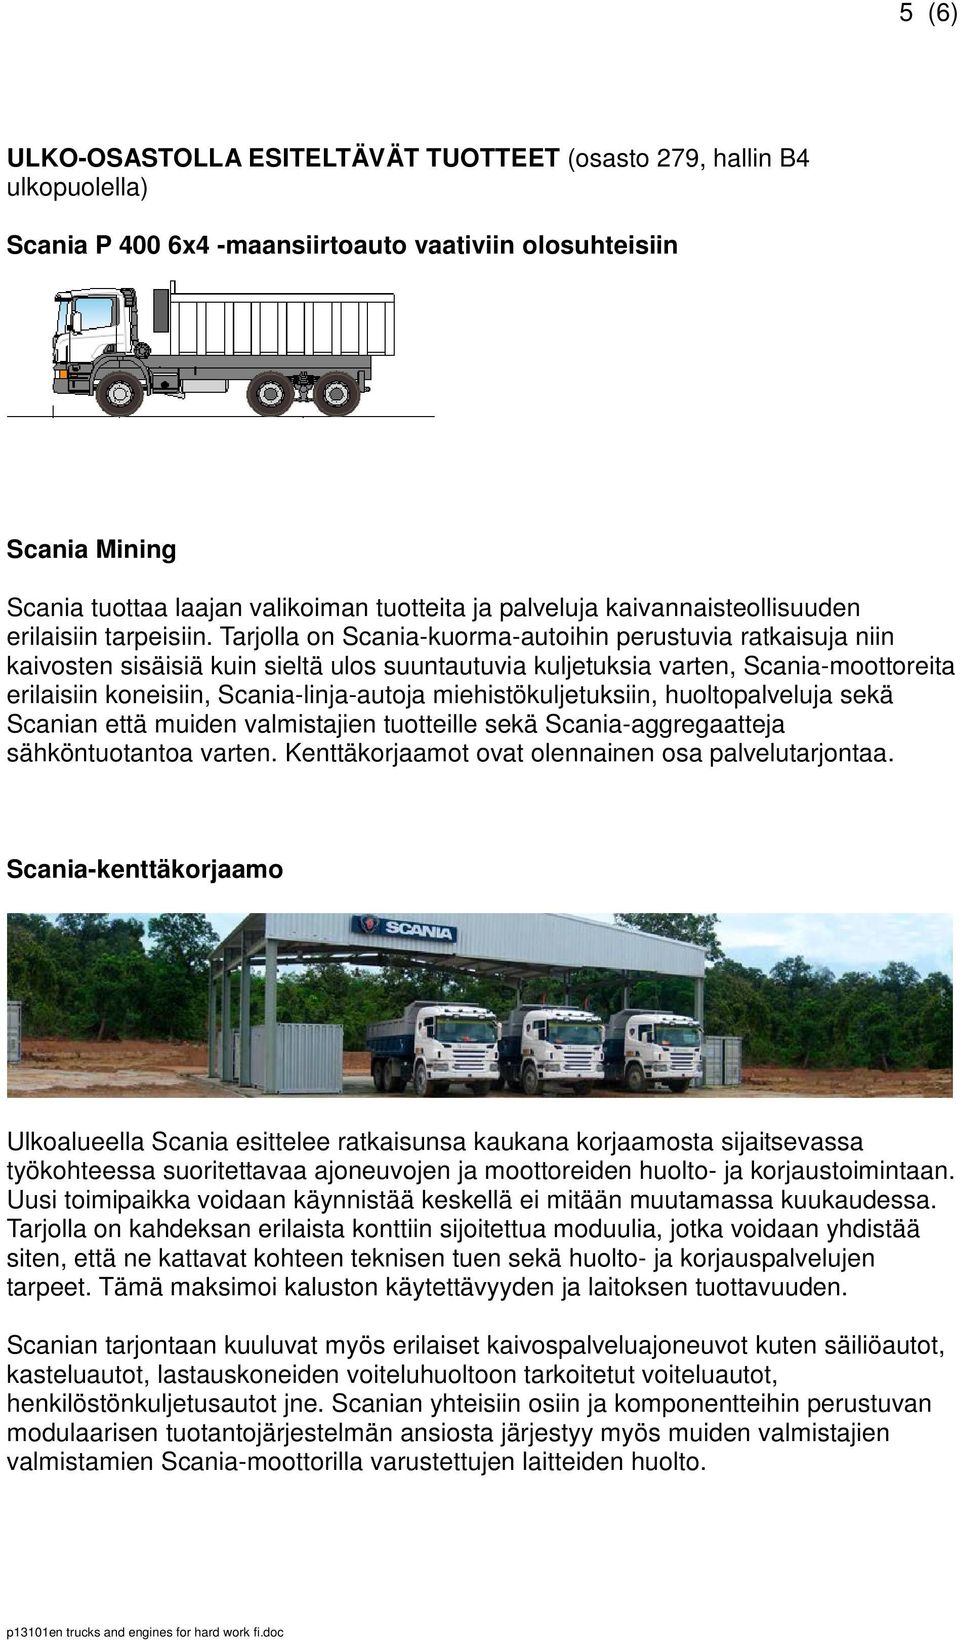 Tarjolla on Scania-kuorma-autoihin perustuvia ratkaisuja niin kaivosten sisäisiä kuin sieltä ulos suuntautuvia kuljetuksia varten, Scania-moottoreita erilaisiin koneisiin, Scania-linja-autoja